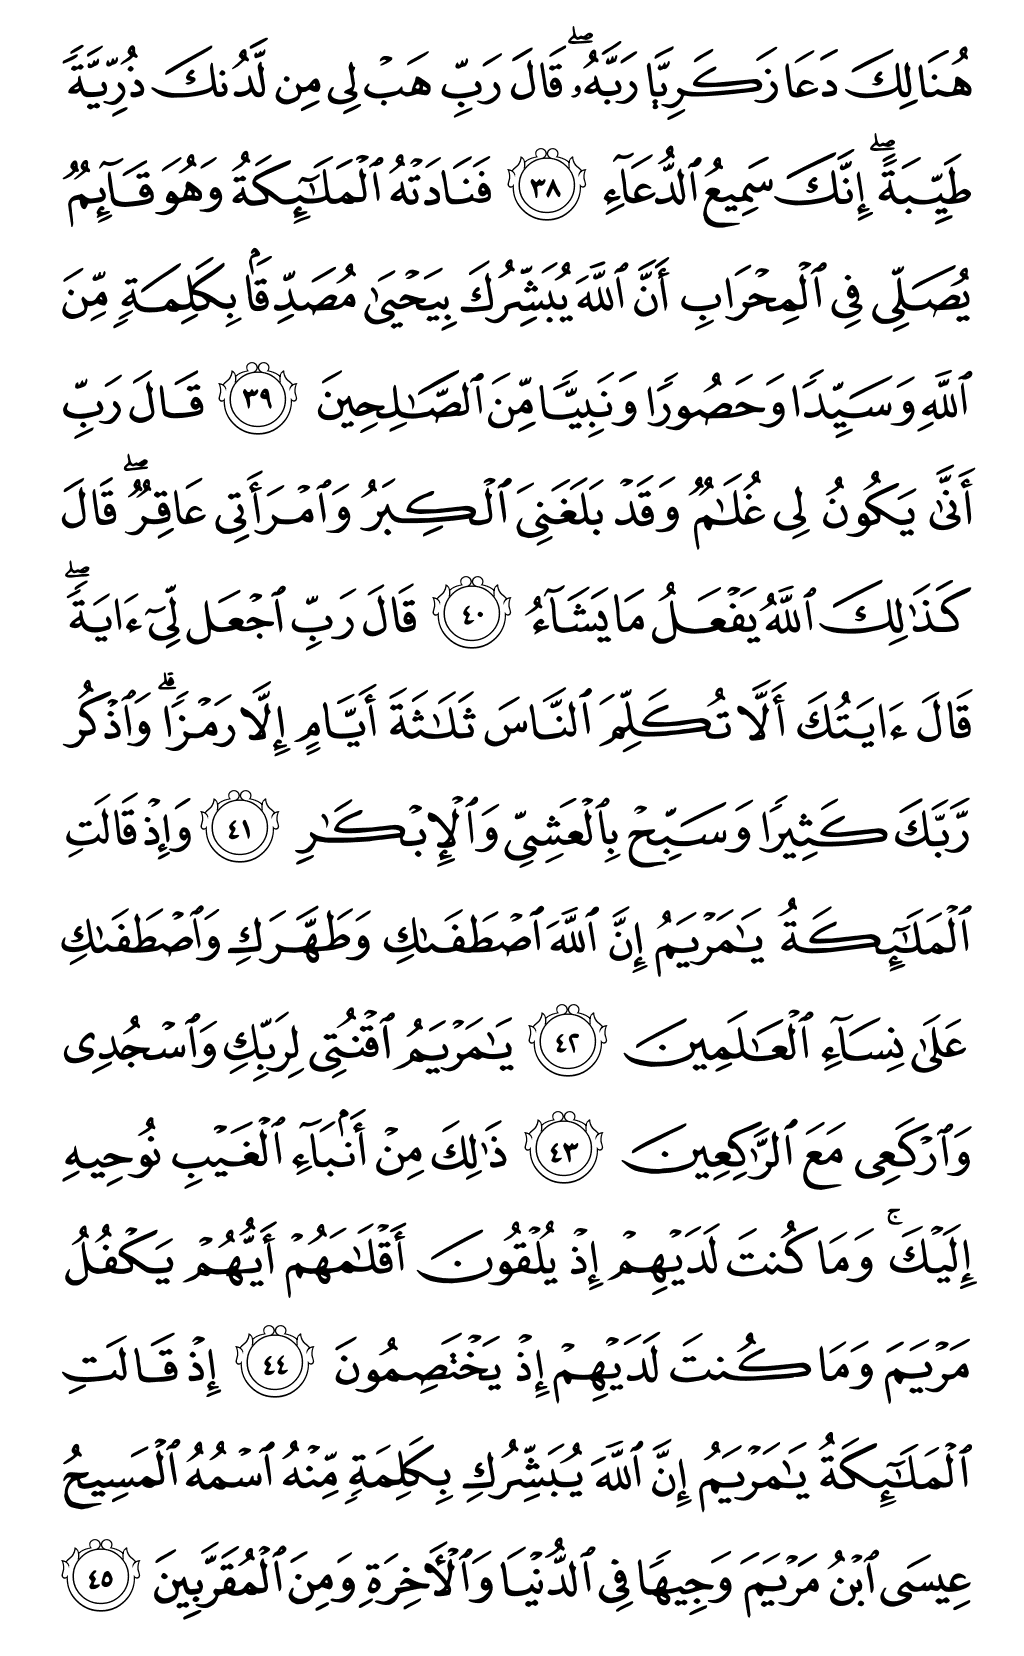 الصفحة رقم 55 من القرآن الكريم